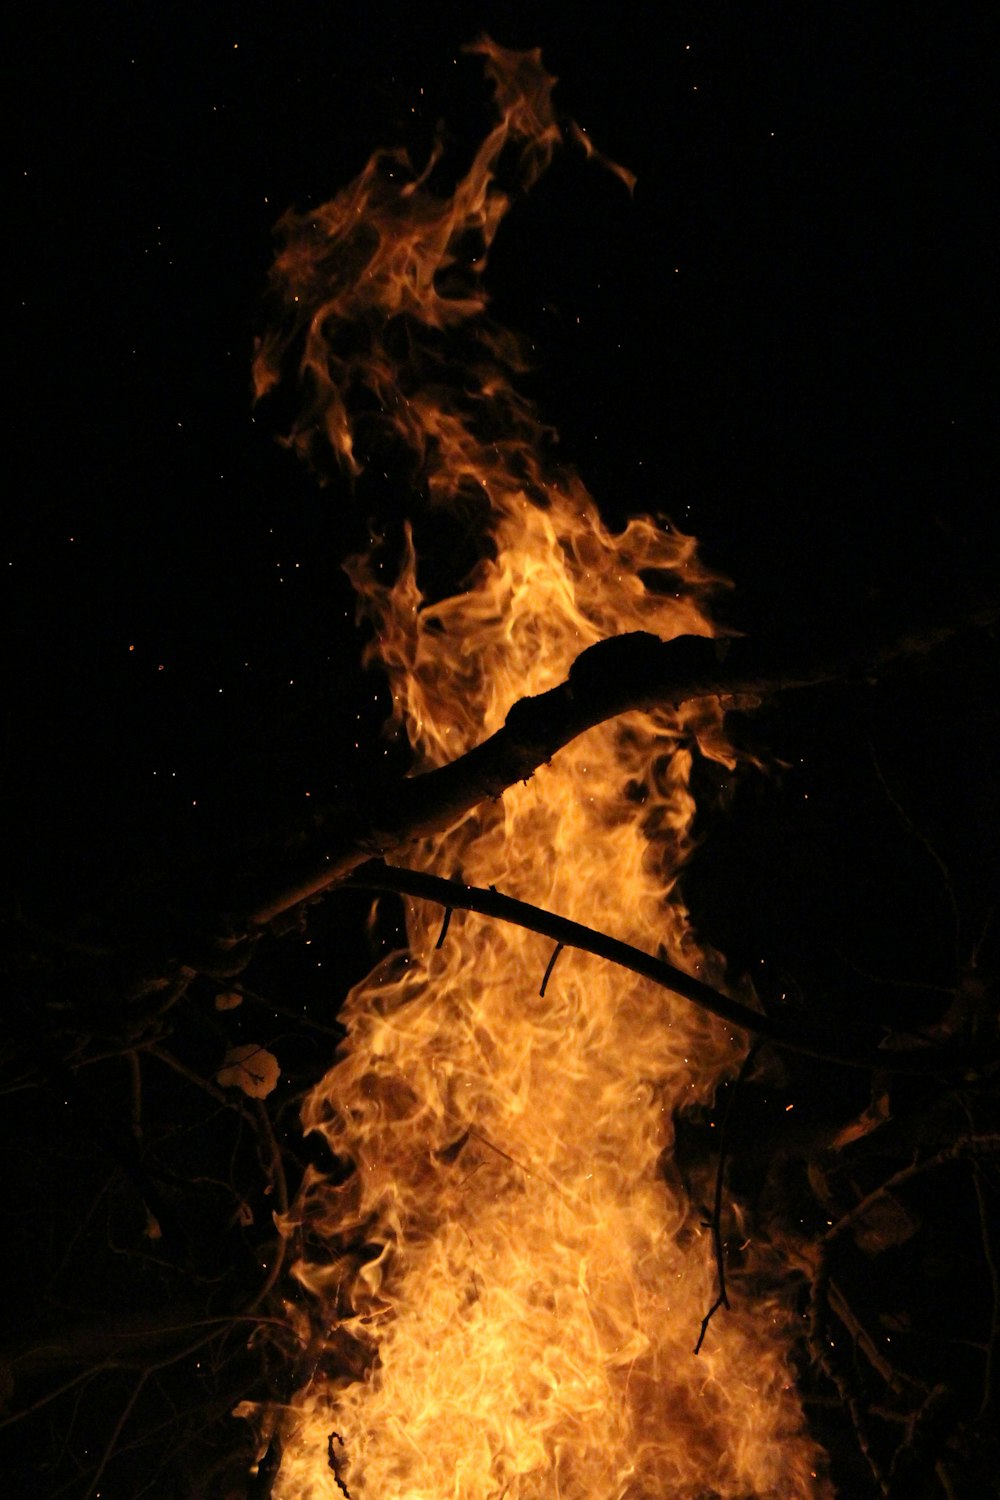 fuoco al buio durante la notte